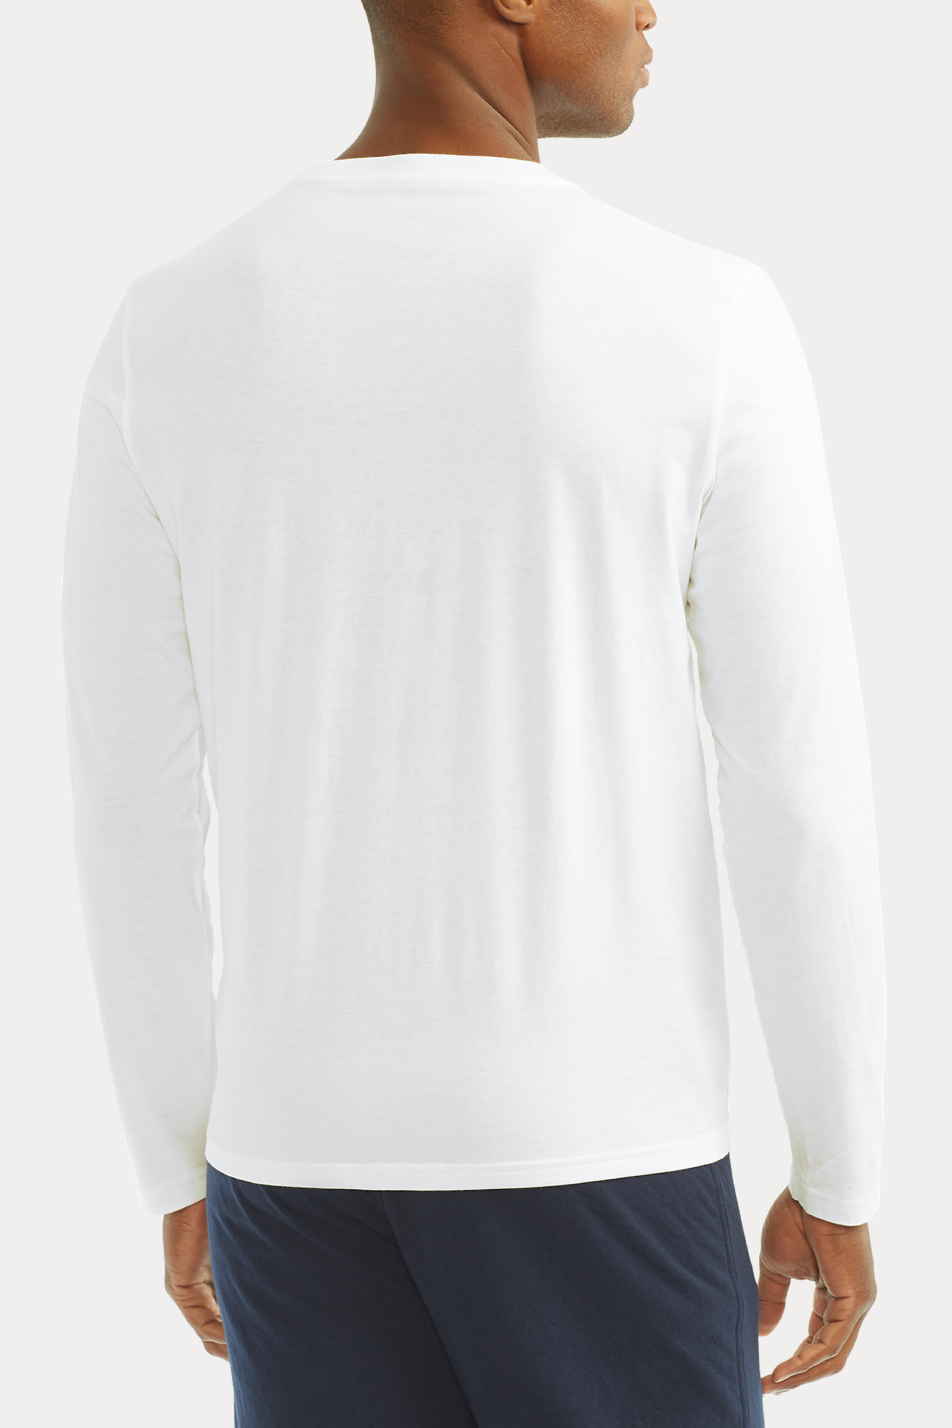 Polo Ralph Lauren Men's Long Sleeve Crew T-Shirt